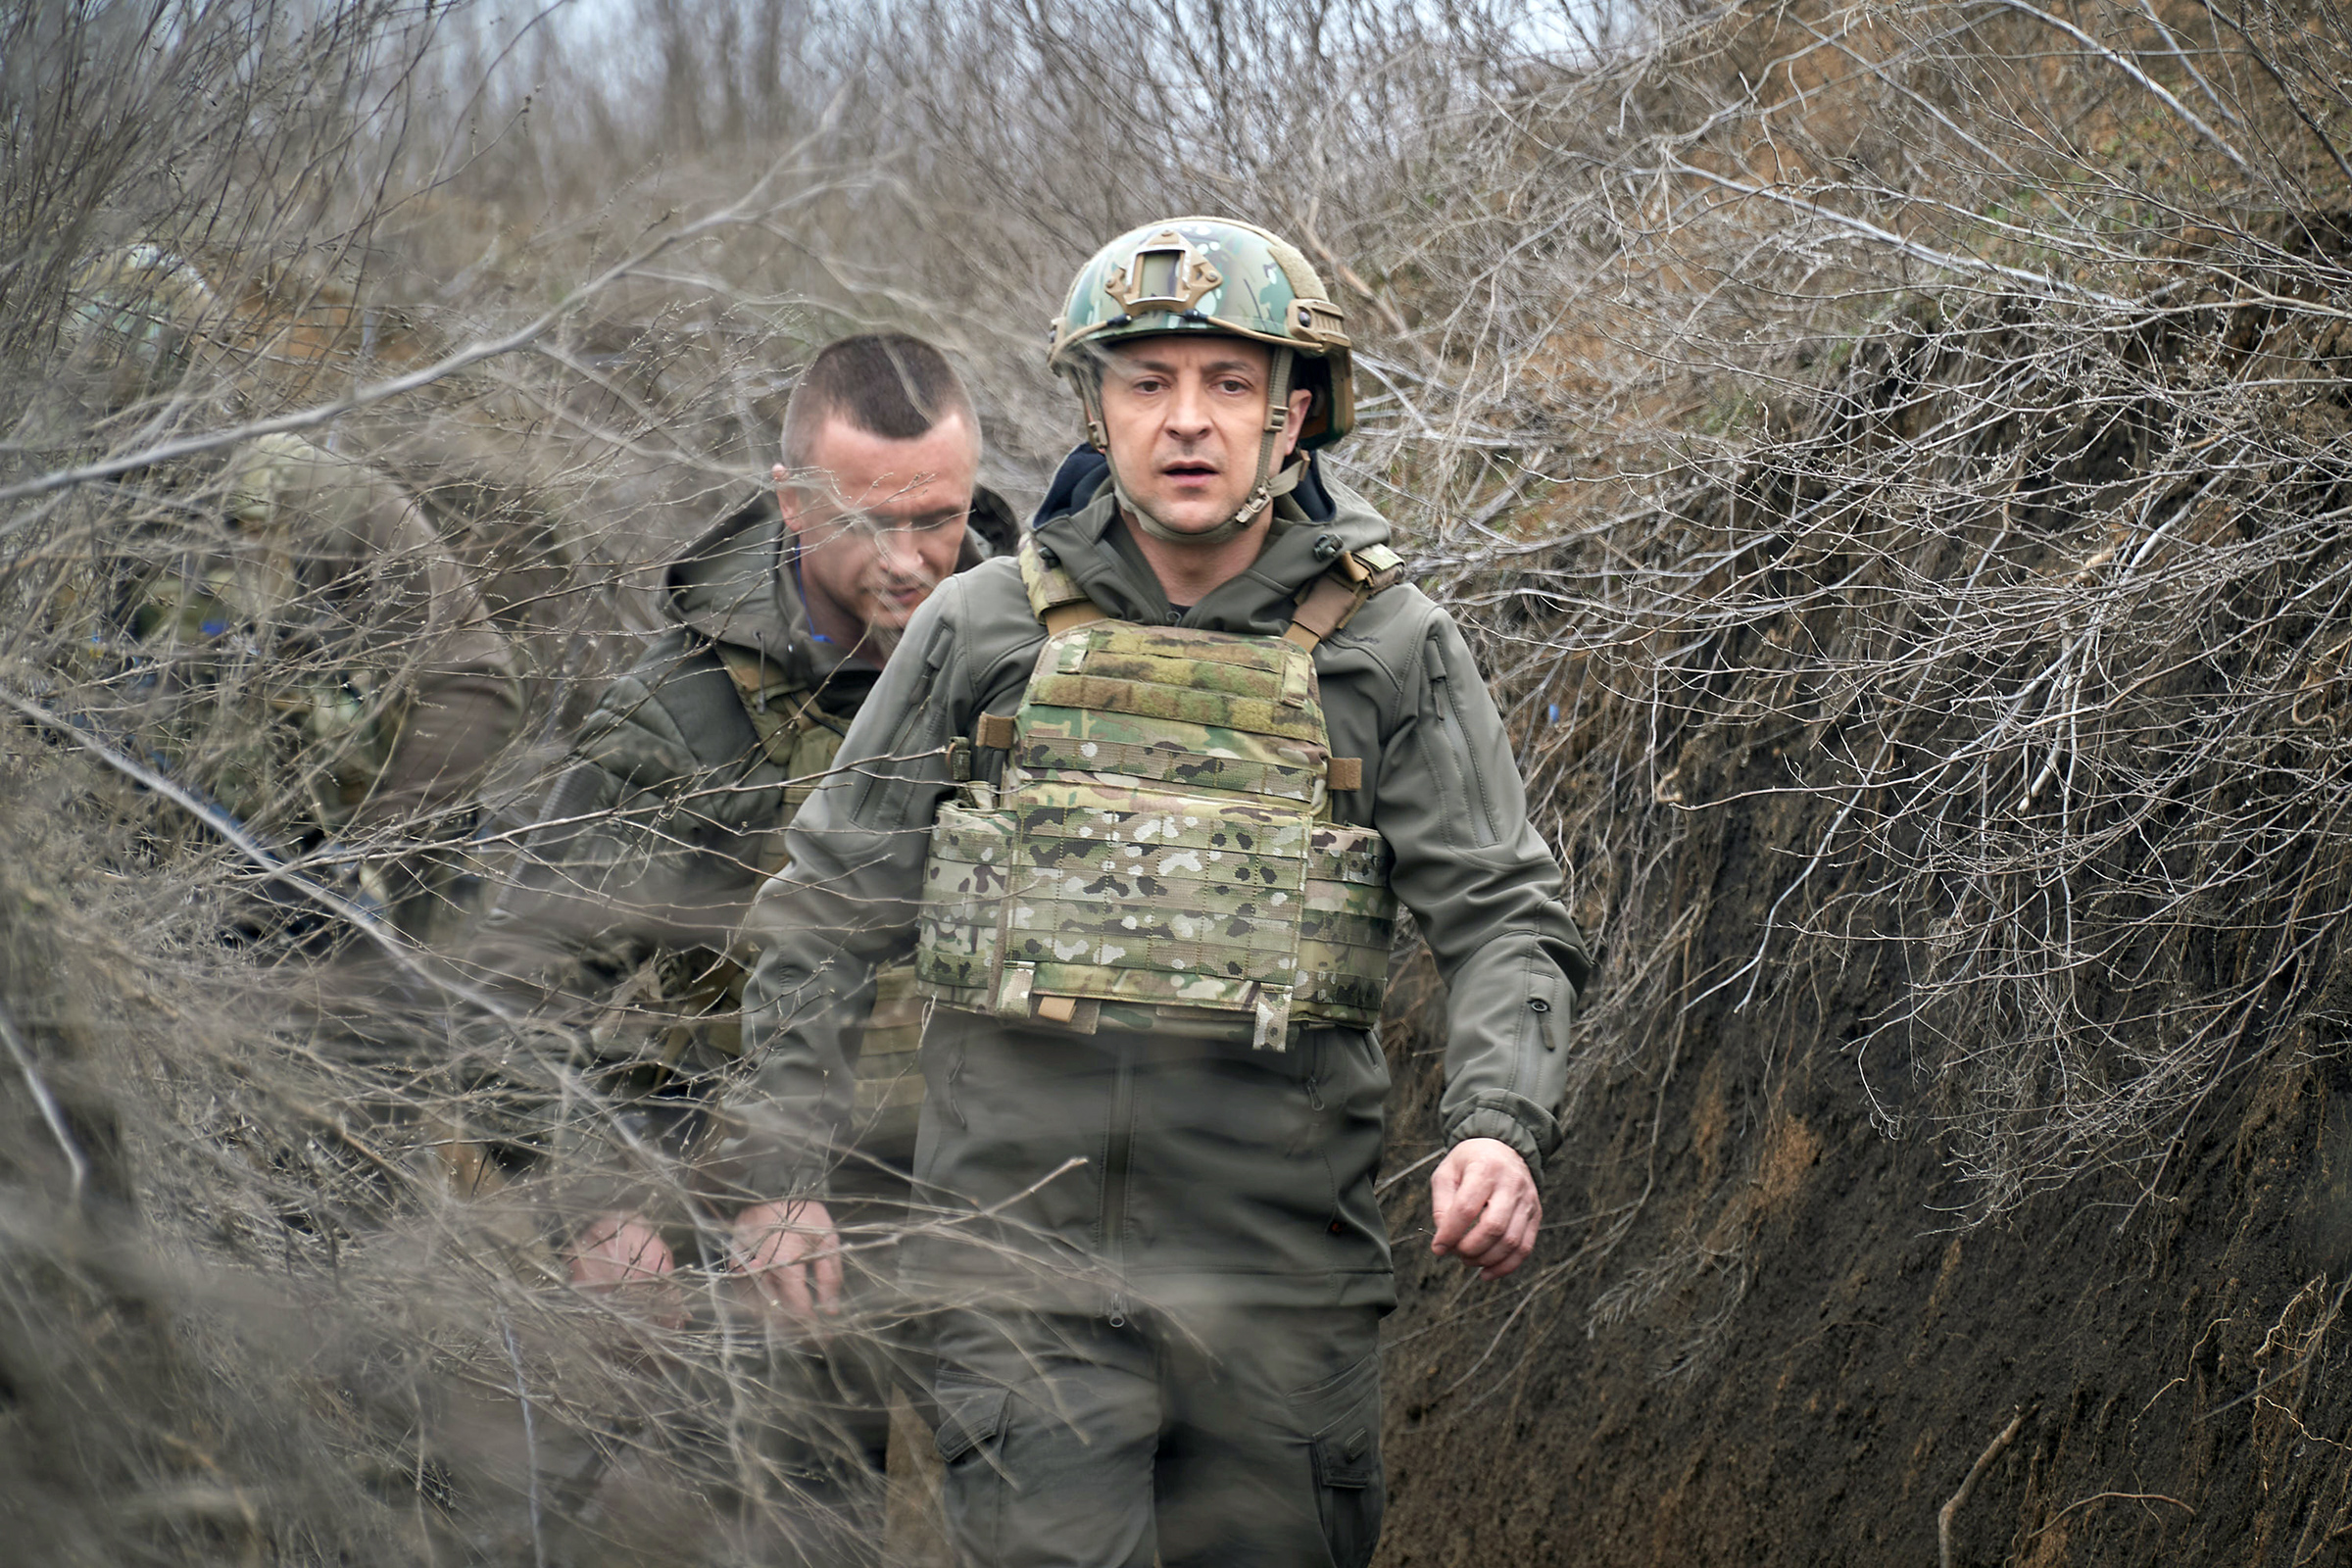 A murit Ministrul Afacerilor de Interne din Ucraina! Elicopterul în care se afla s-a prăbușit